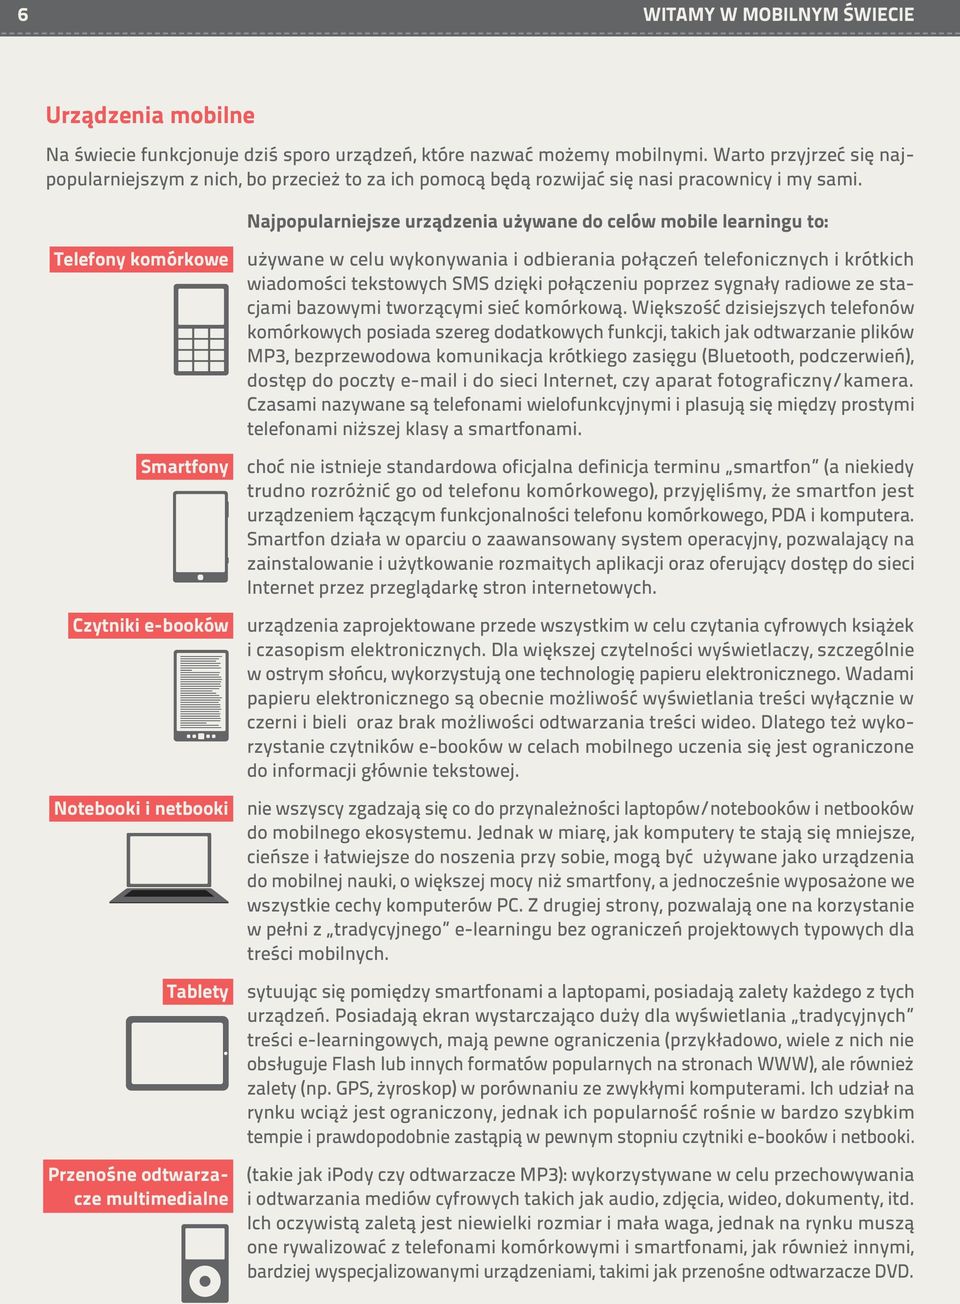 Najpopularniejsze urządzenia używane do celów mobile learningu to: Telefony komórkowe Smartfony Czytniki e-booków Notebooki i netbooki Tablety Przenośne odtwarzacze multimedialne używane w celu